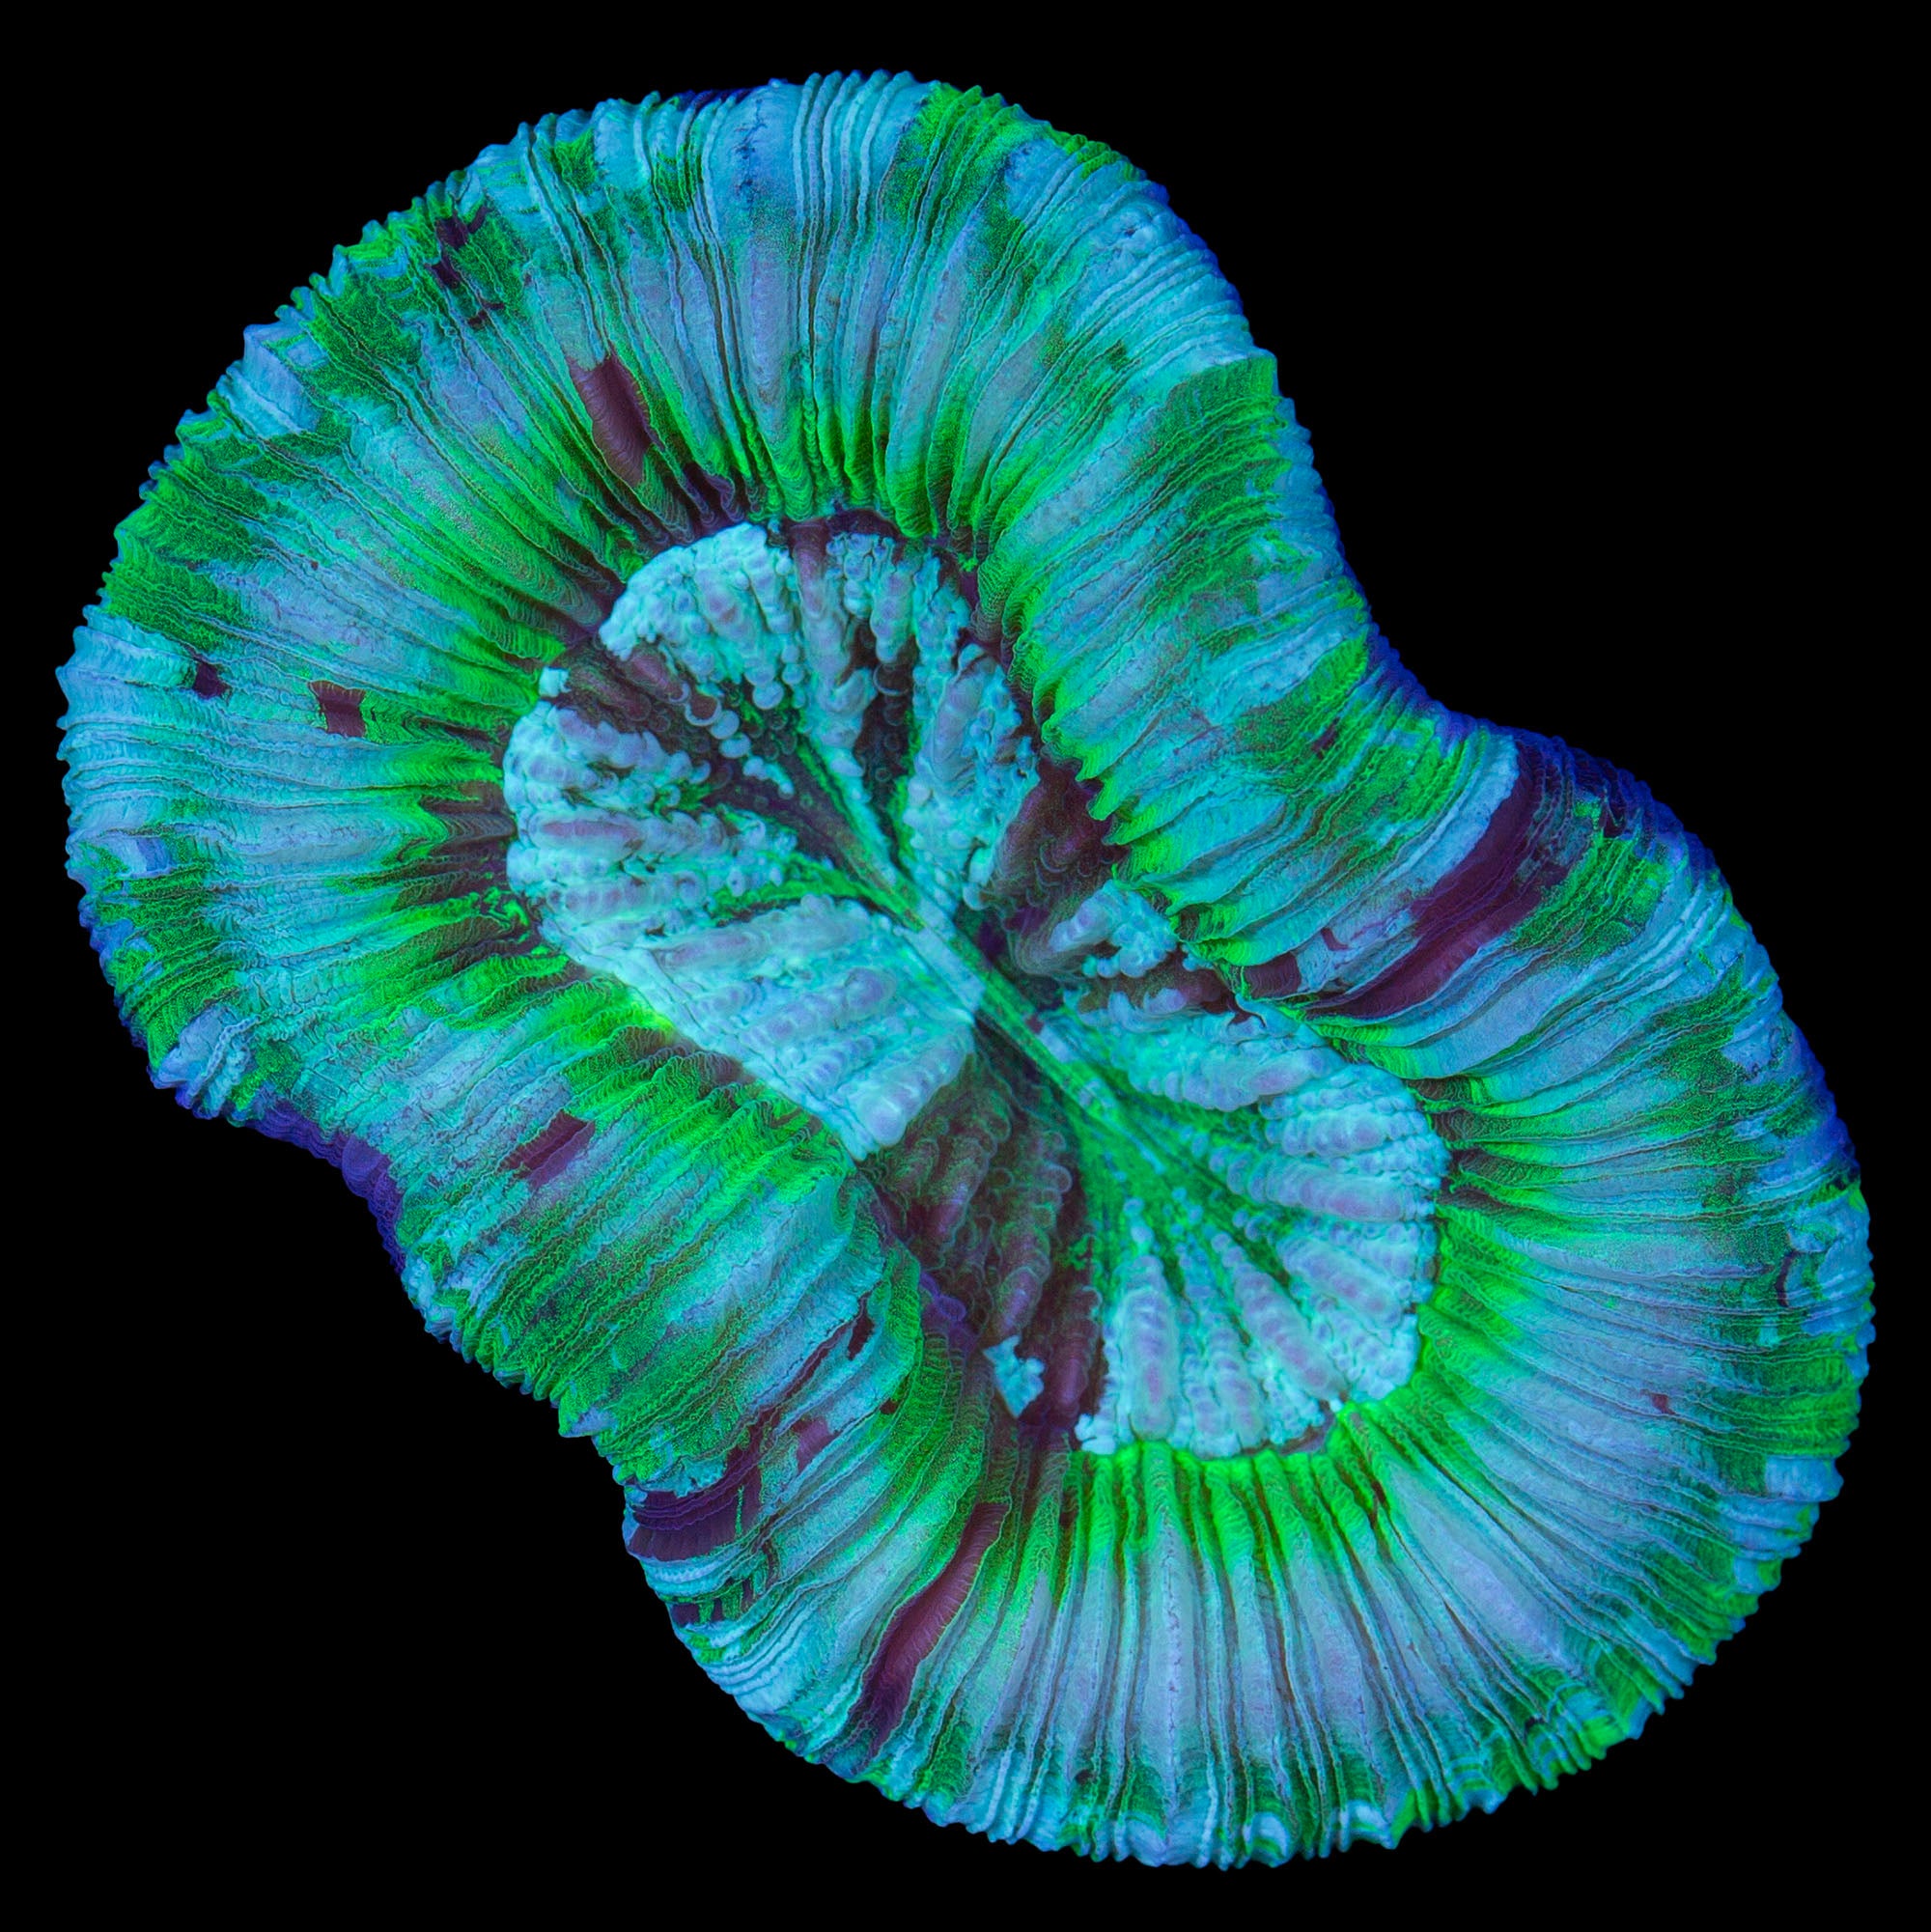 Green Trachyphllia Coral